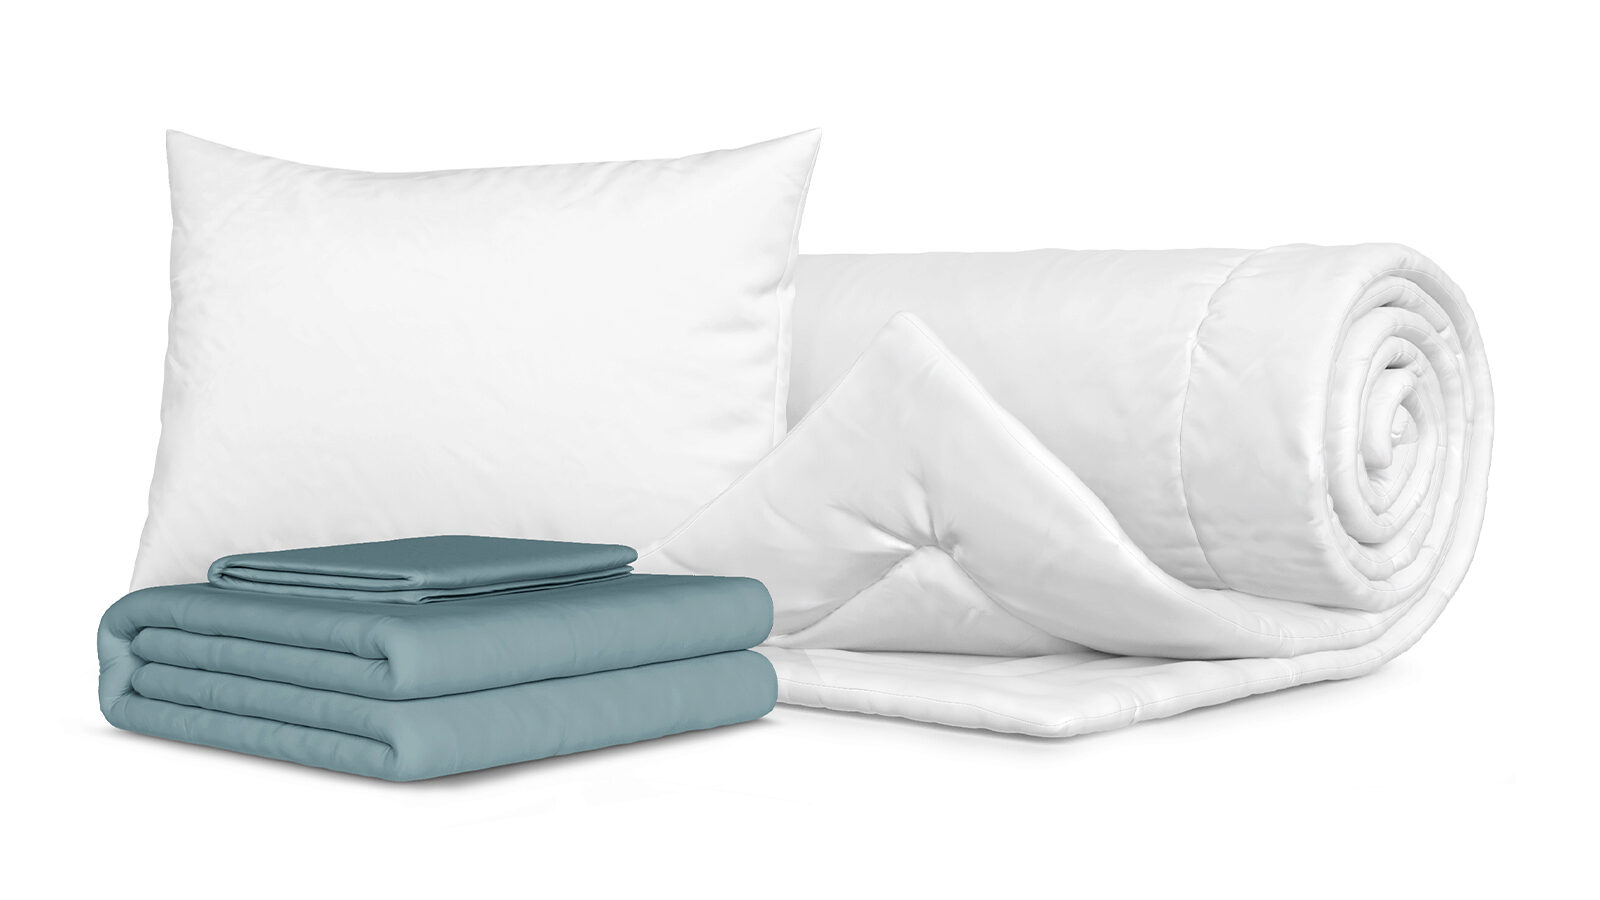 Комплект Одеяло Beat + Подушка Sky + Комплект постельного белья Comfort Cotton, цвет: Серо-голубой